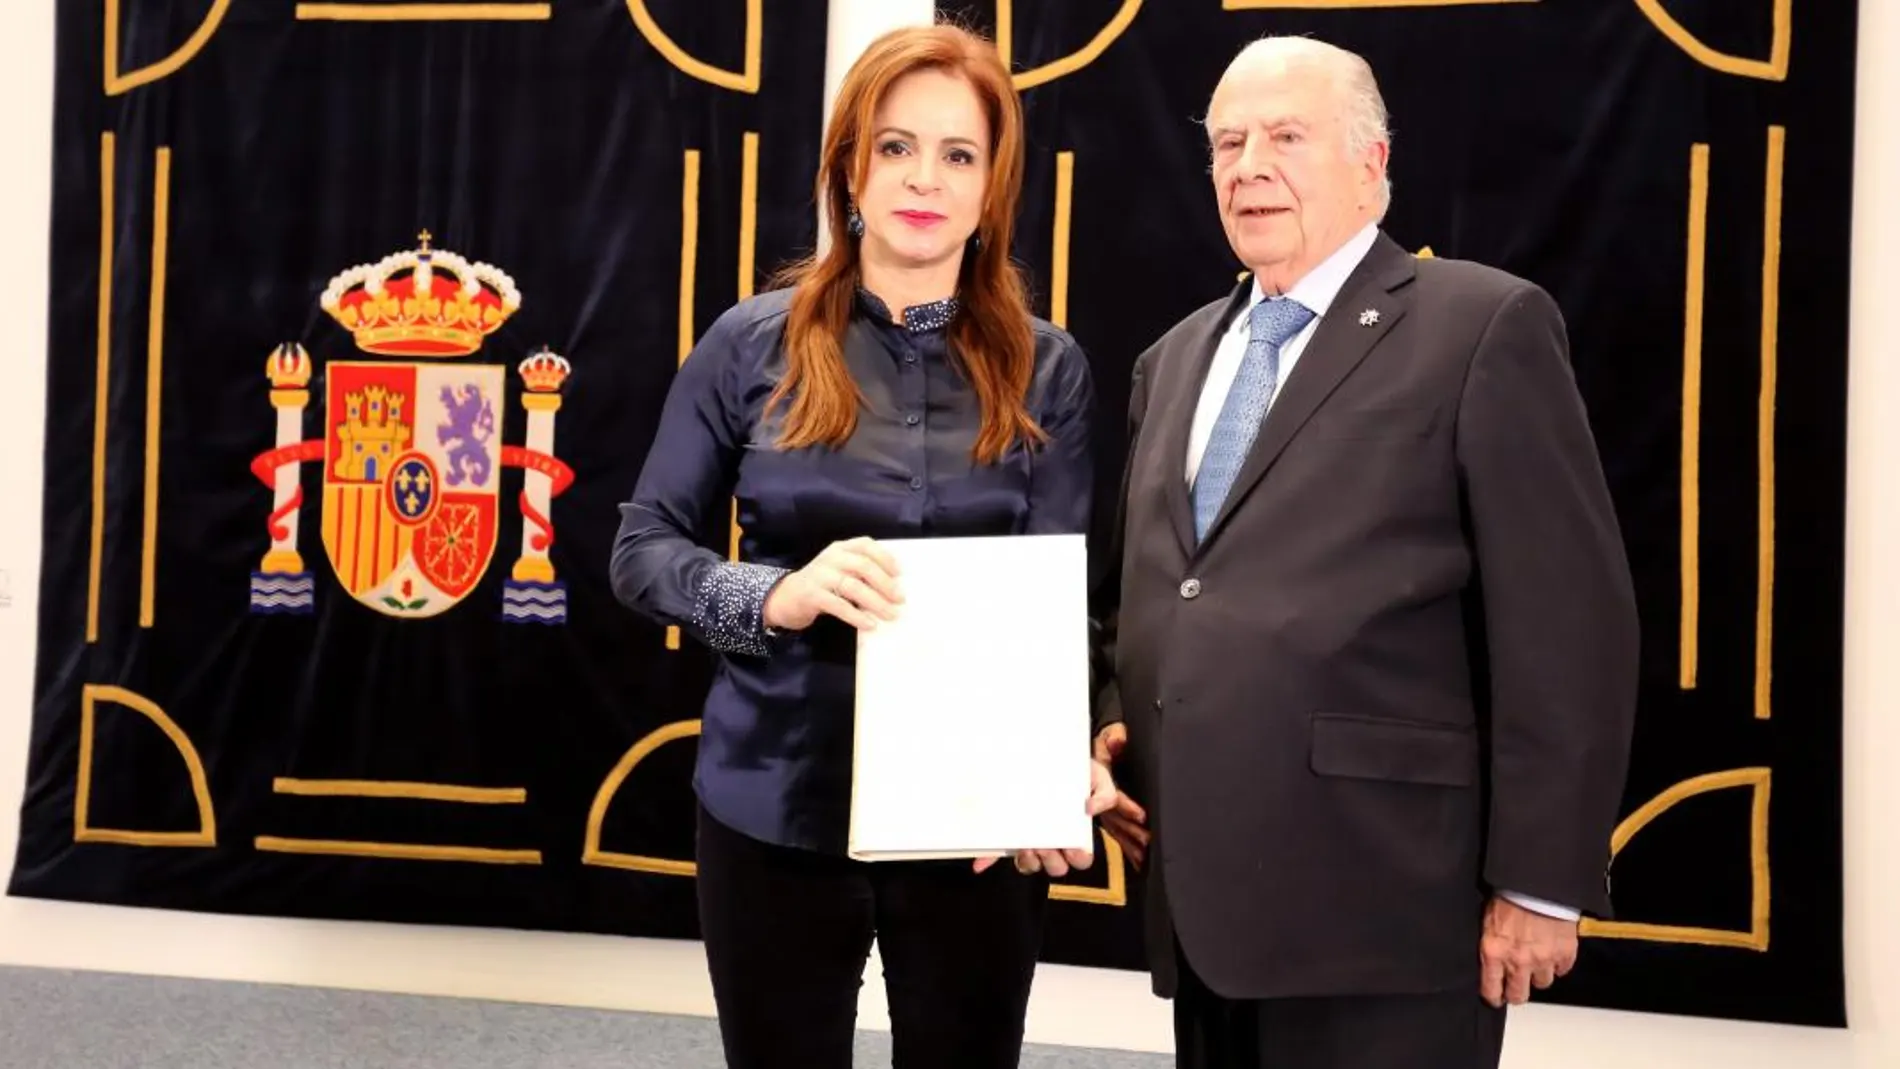 La presidenta de las Cortes, Silvia Clemente, recibe el informe del Procurador del Común, Javier Amoedo